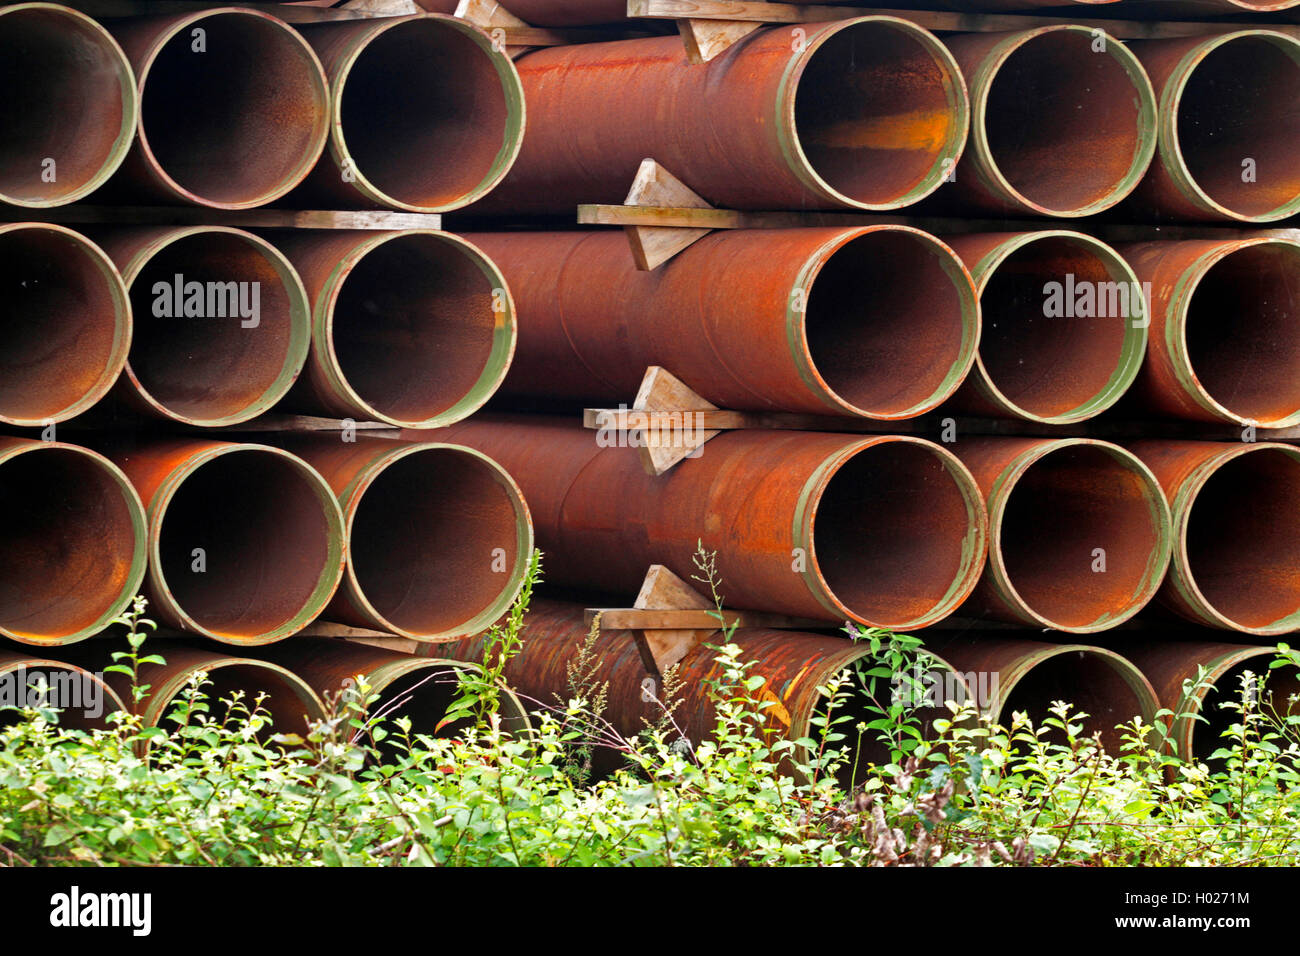 Almacenamiento de tubos de hierro en una zona industrial, Alemania Foto de stock